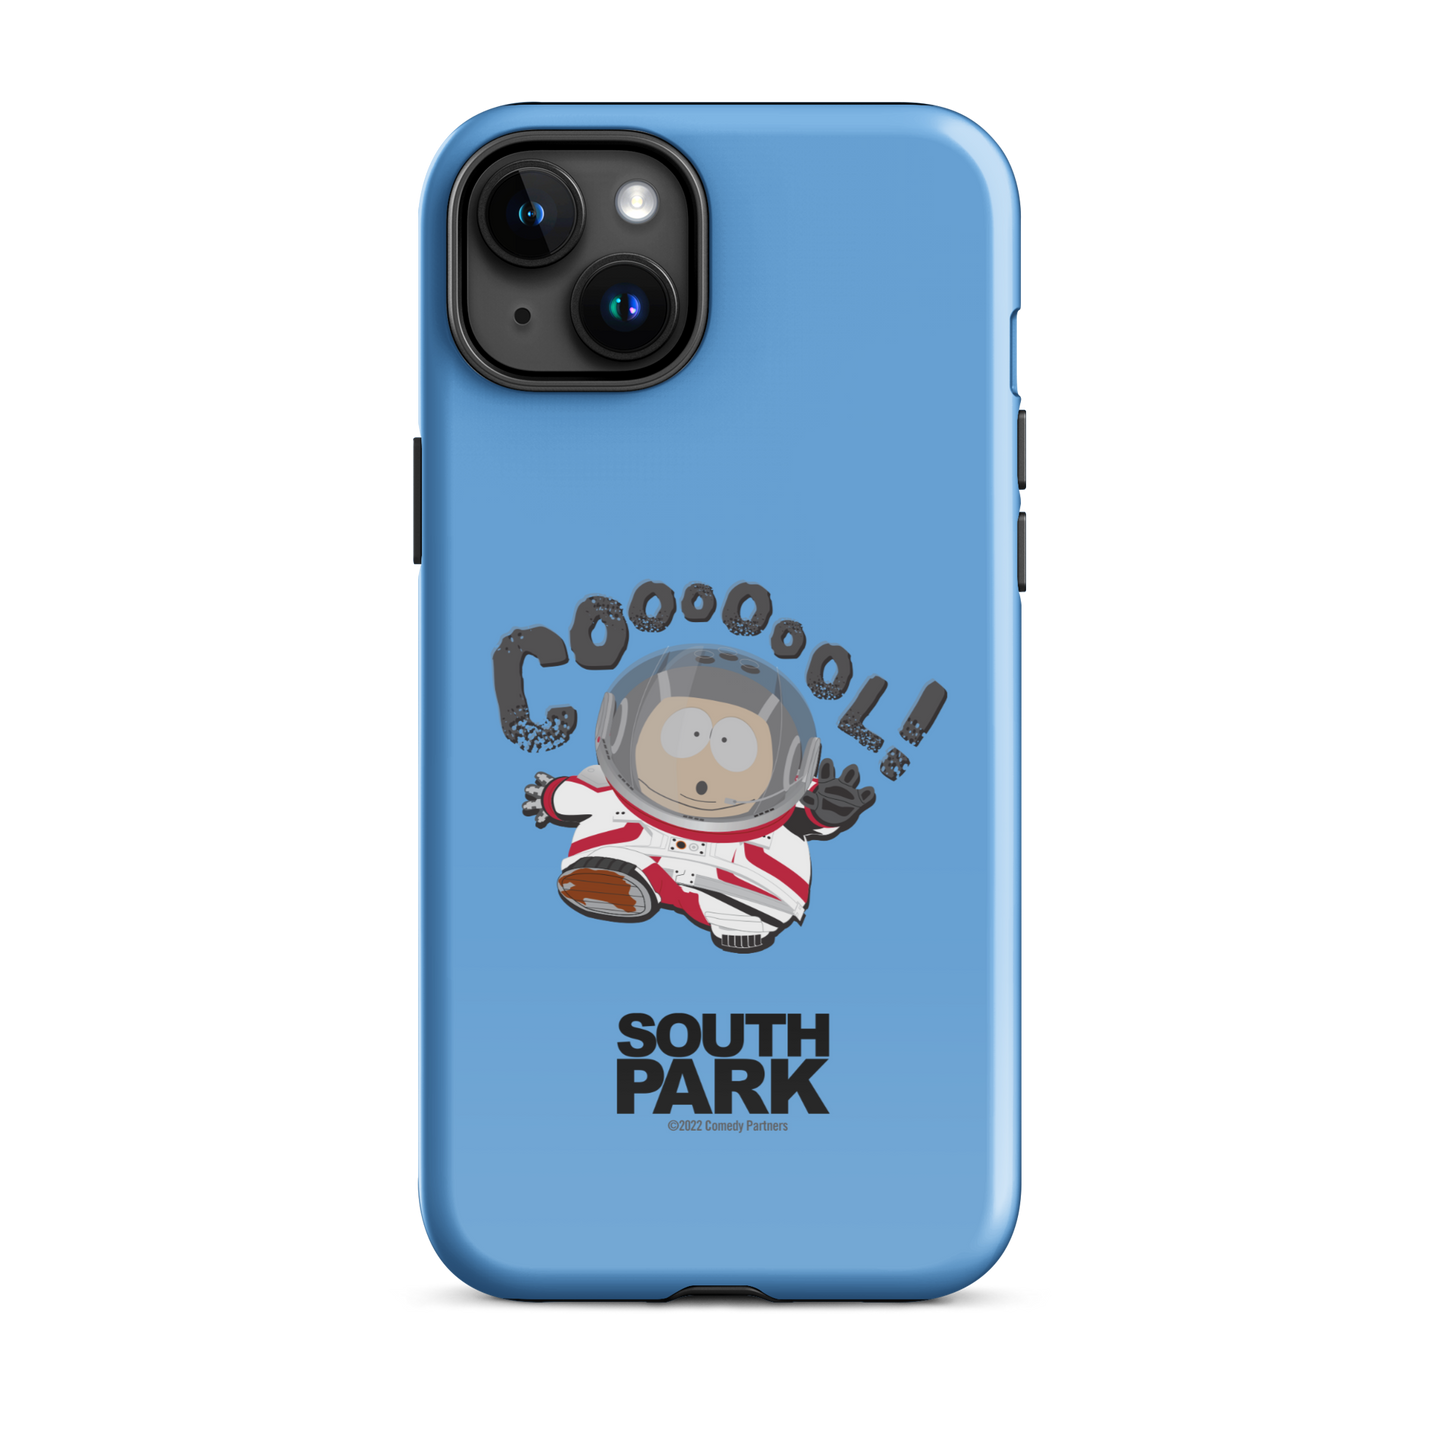 South Park ¡Cartman Astronauta Coool! Tough Phone Case - iPhone